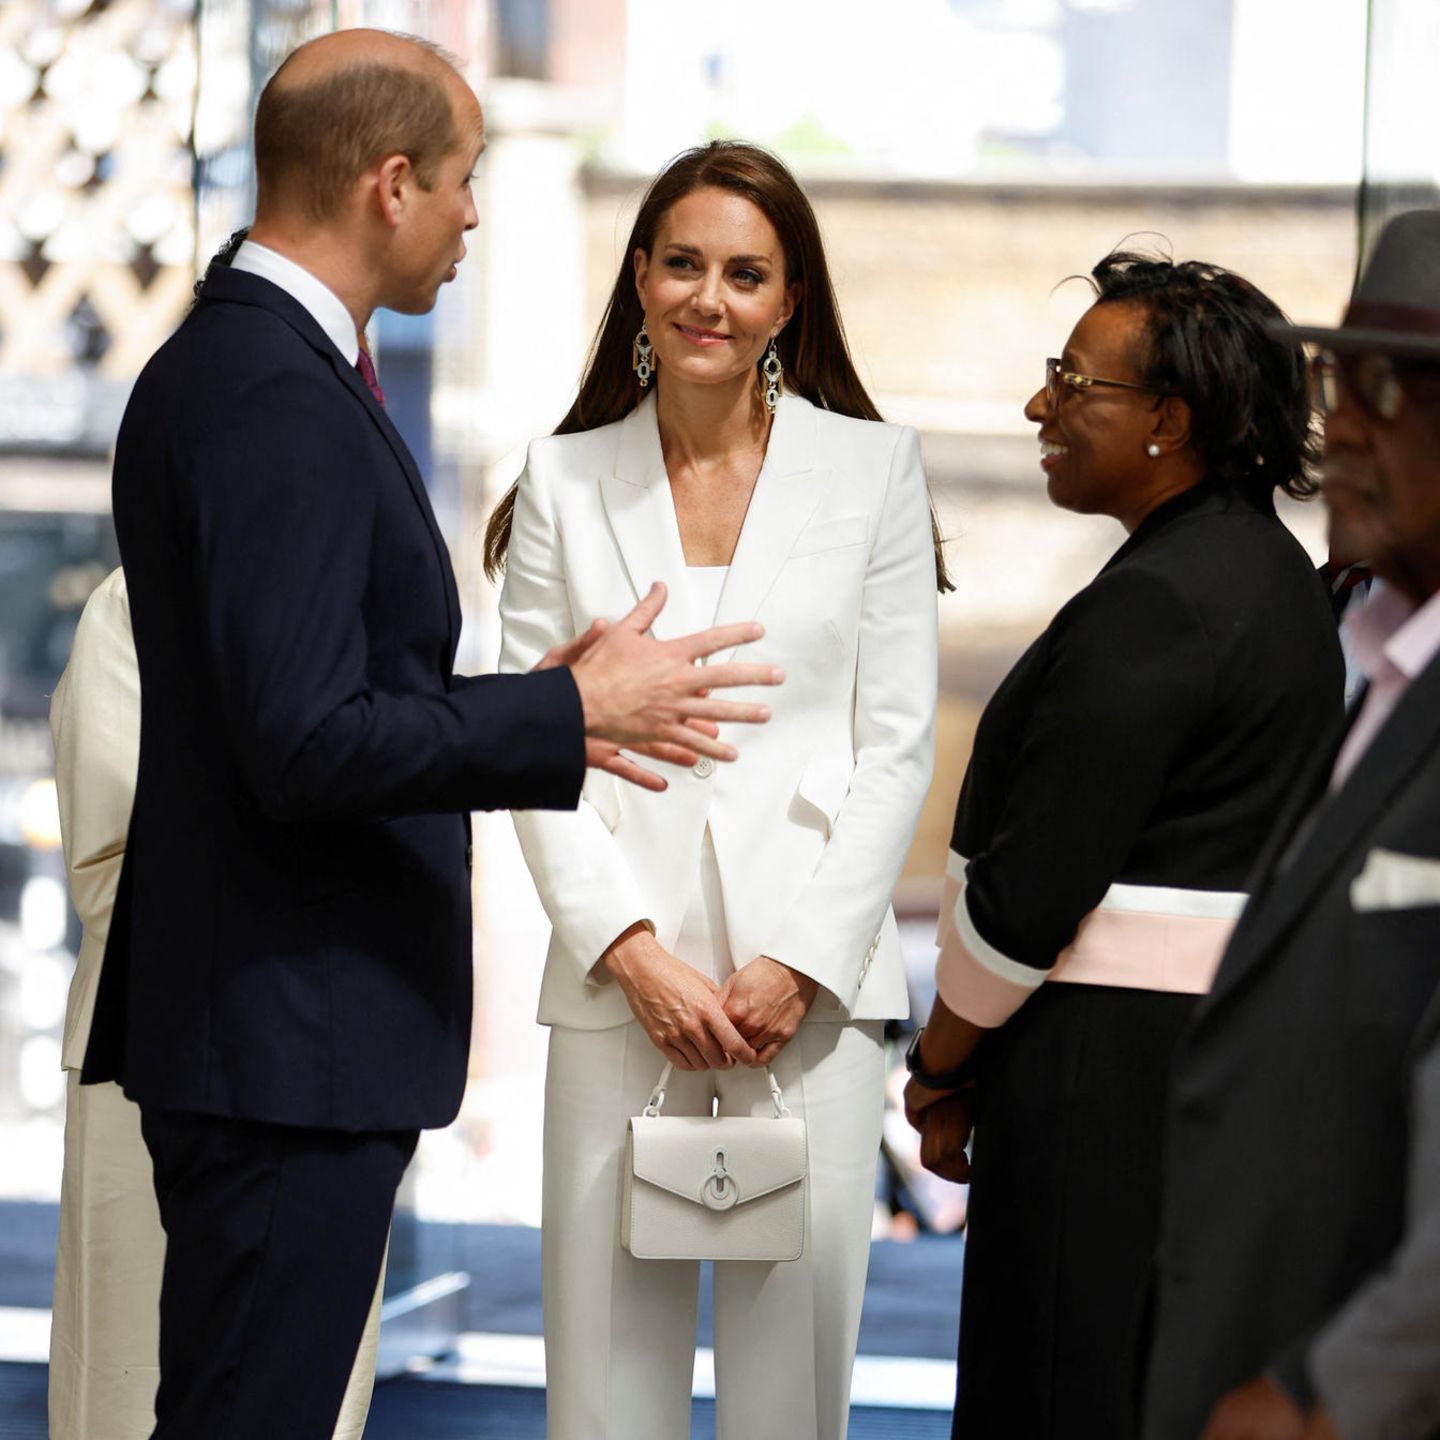 Die Haare trägt Herzogin Catherine ungewohnt glatt und im Seitenscheitel. Besonders auffällig sind auch Kates goldfarbene Glamour-Ohrringe, die mit Perlmutt-Elementen das Weiß des Anzugs wieder aufgreifen. 